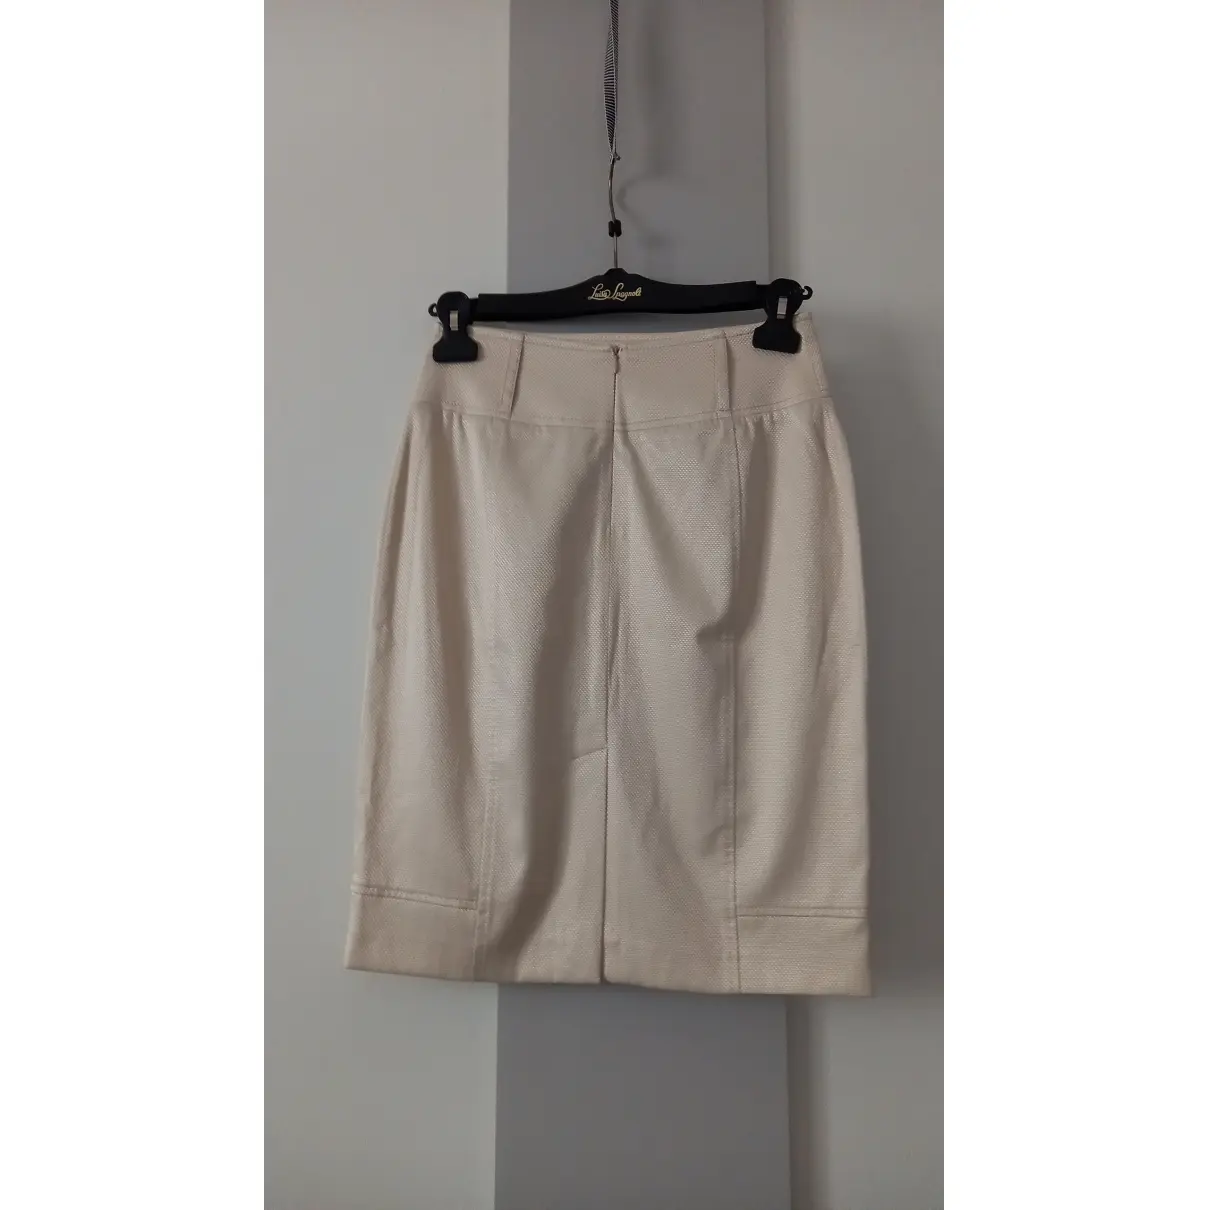 Buy Mariella Rosati Mid-length skirt online